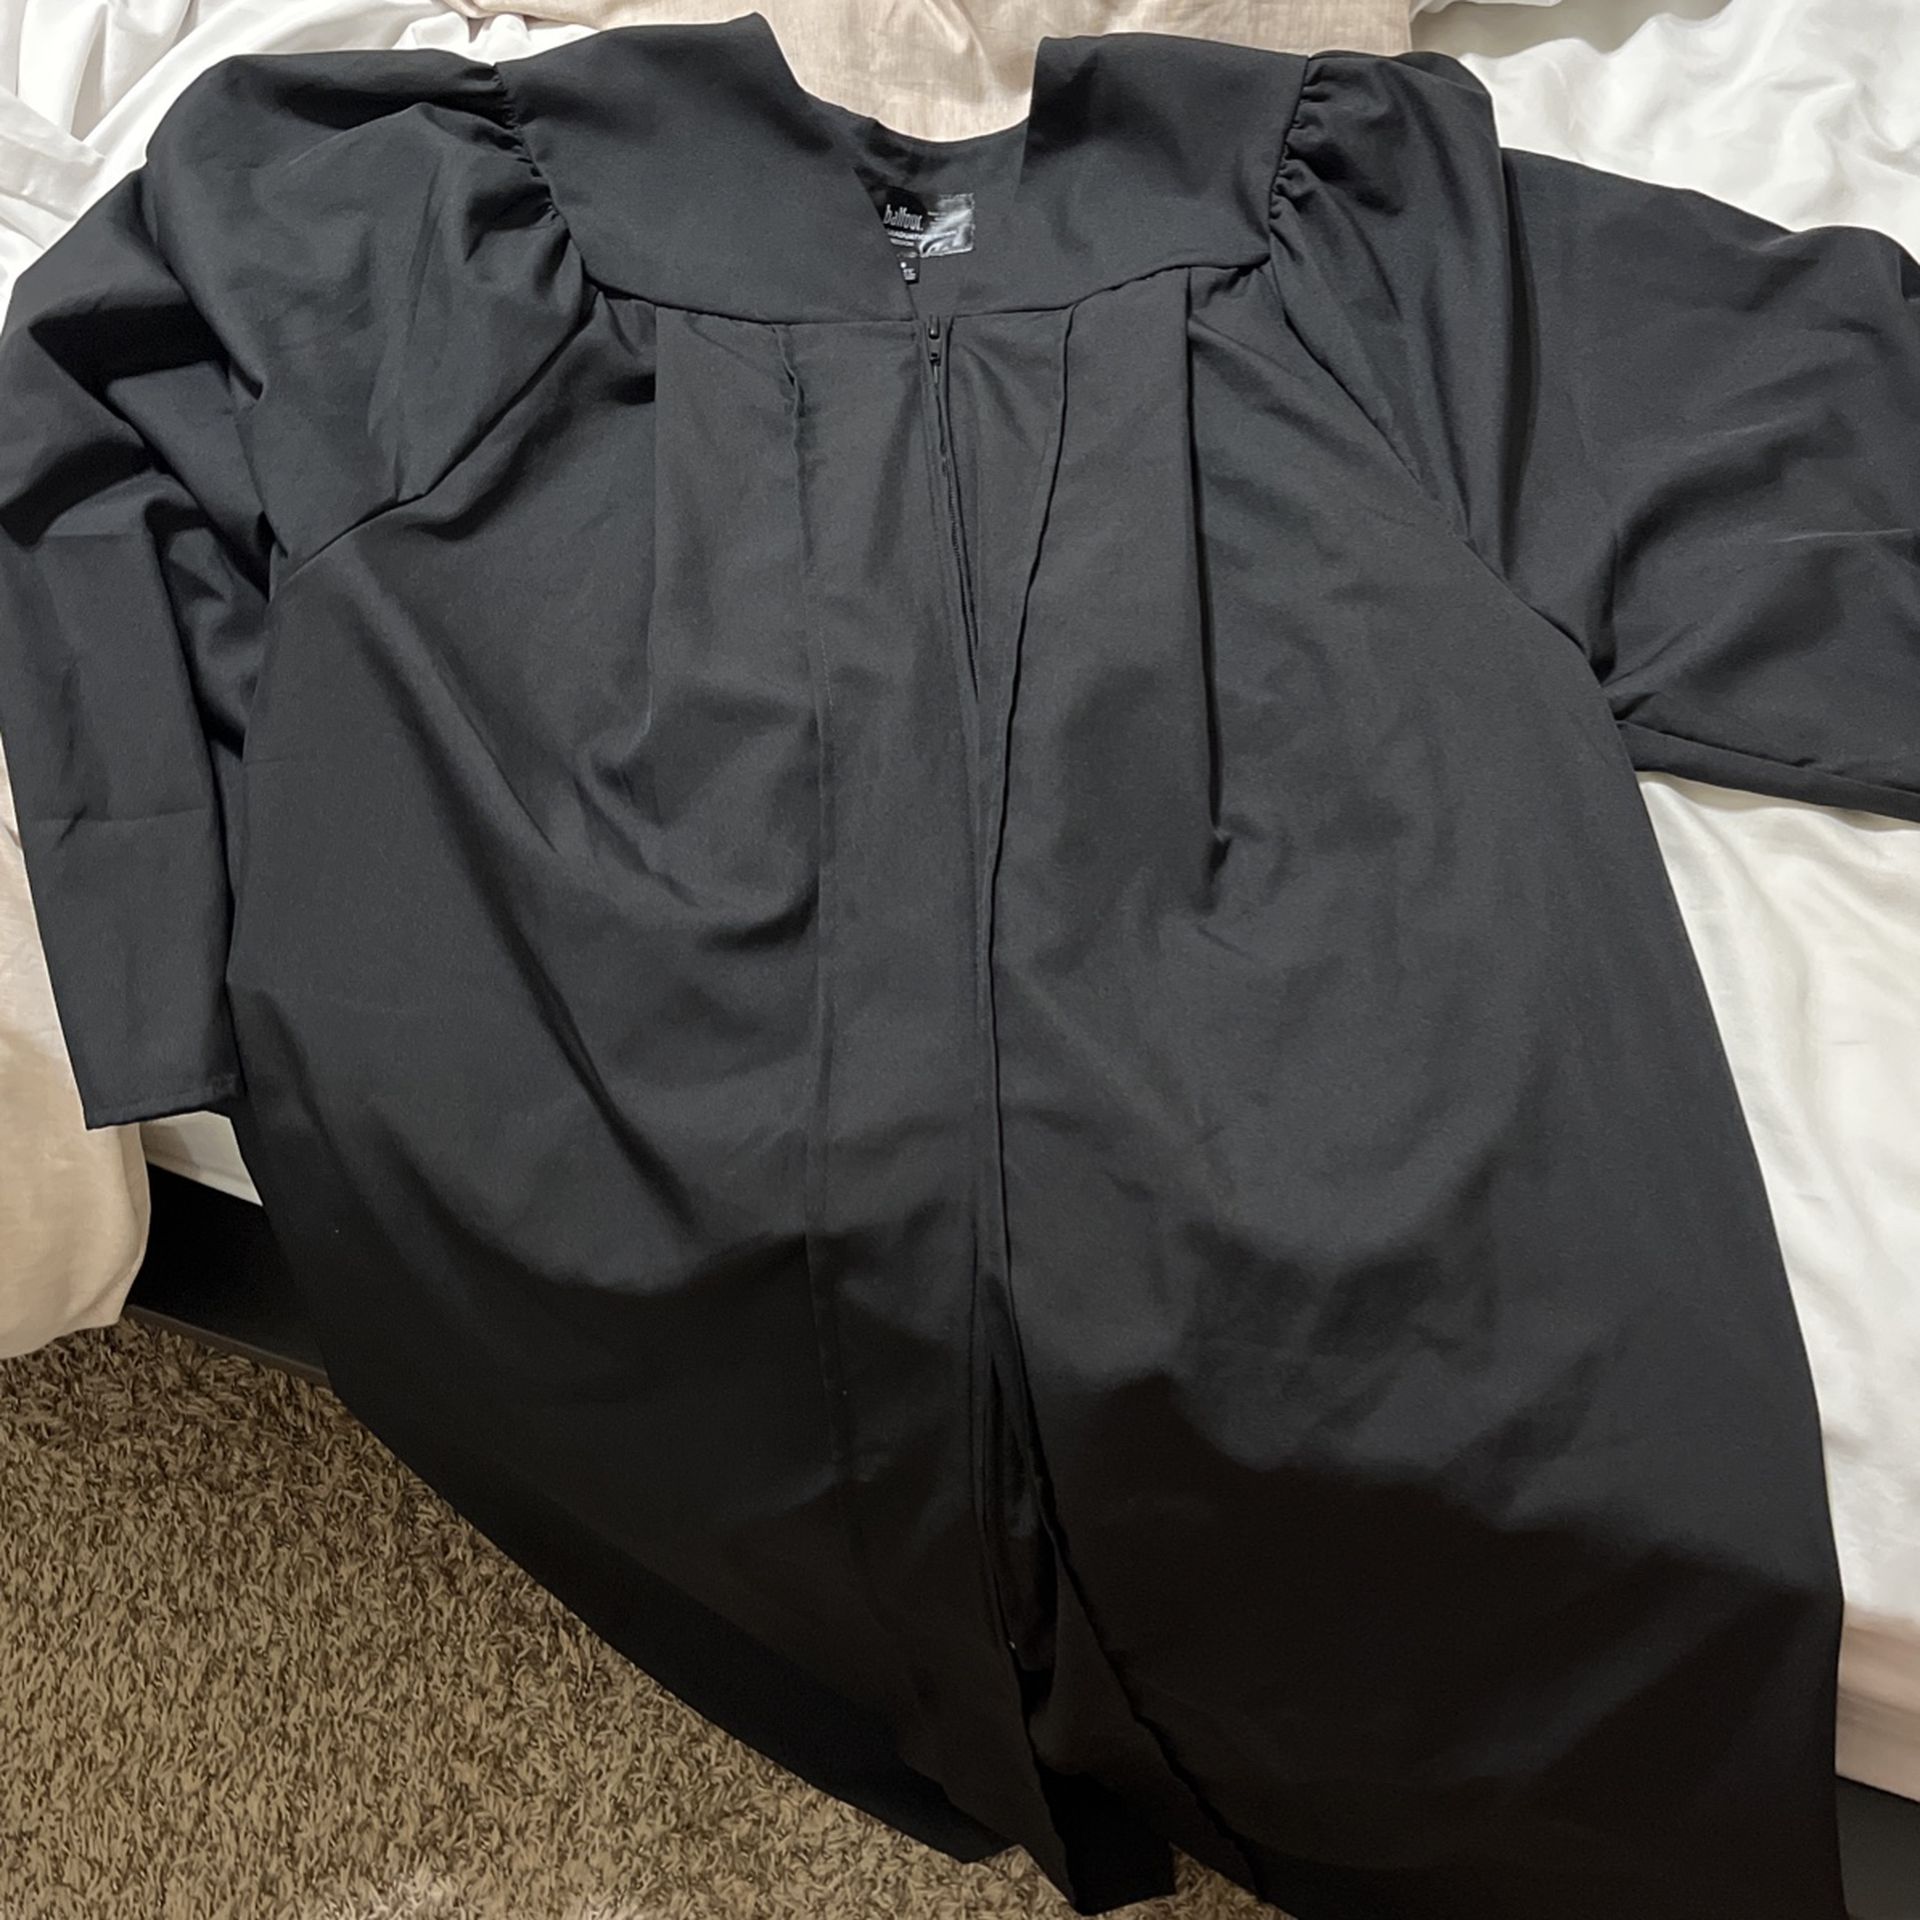 Black Balfour Graduation Gown